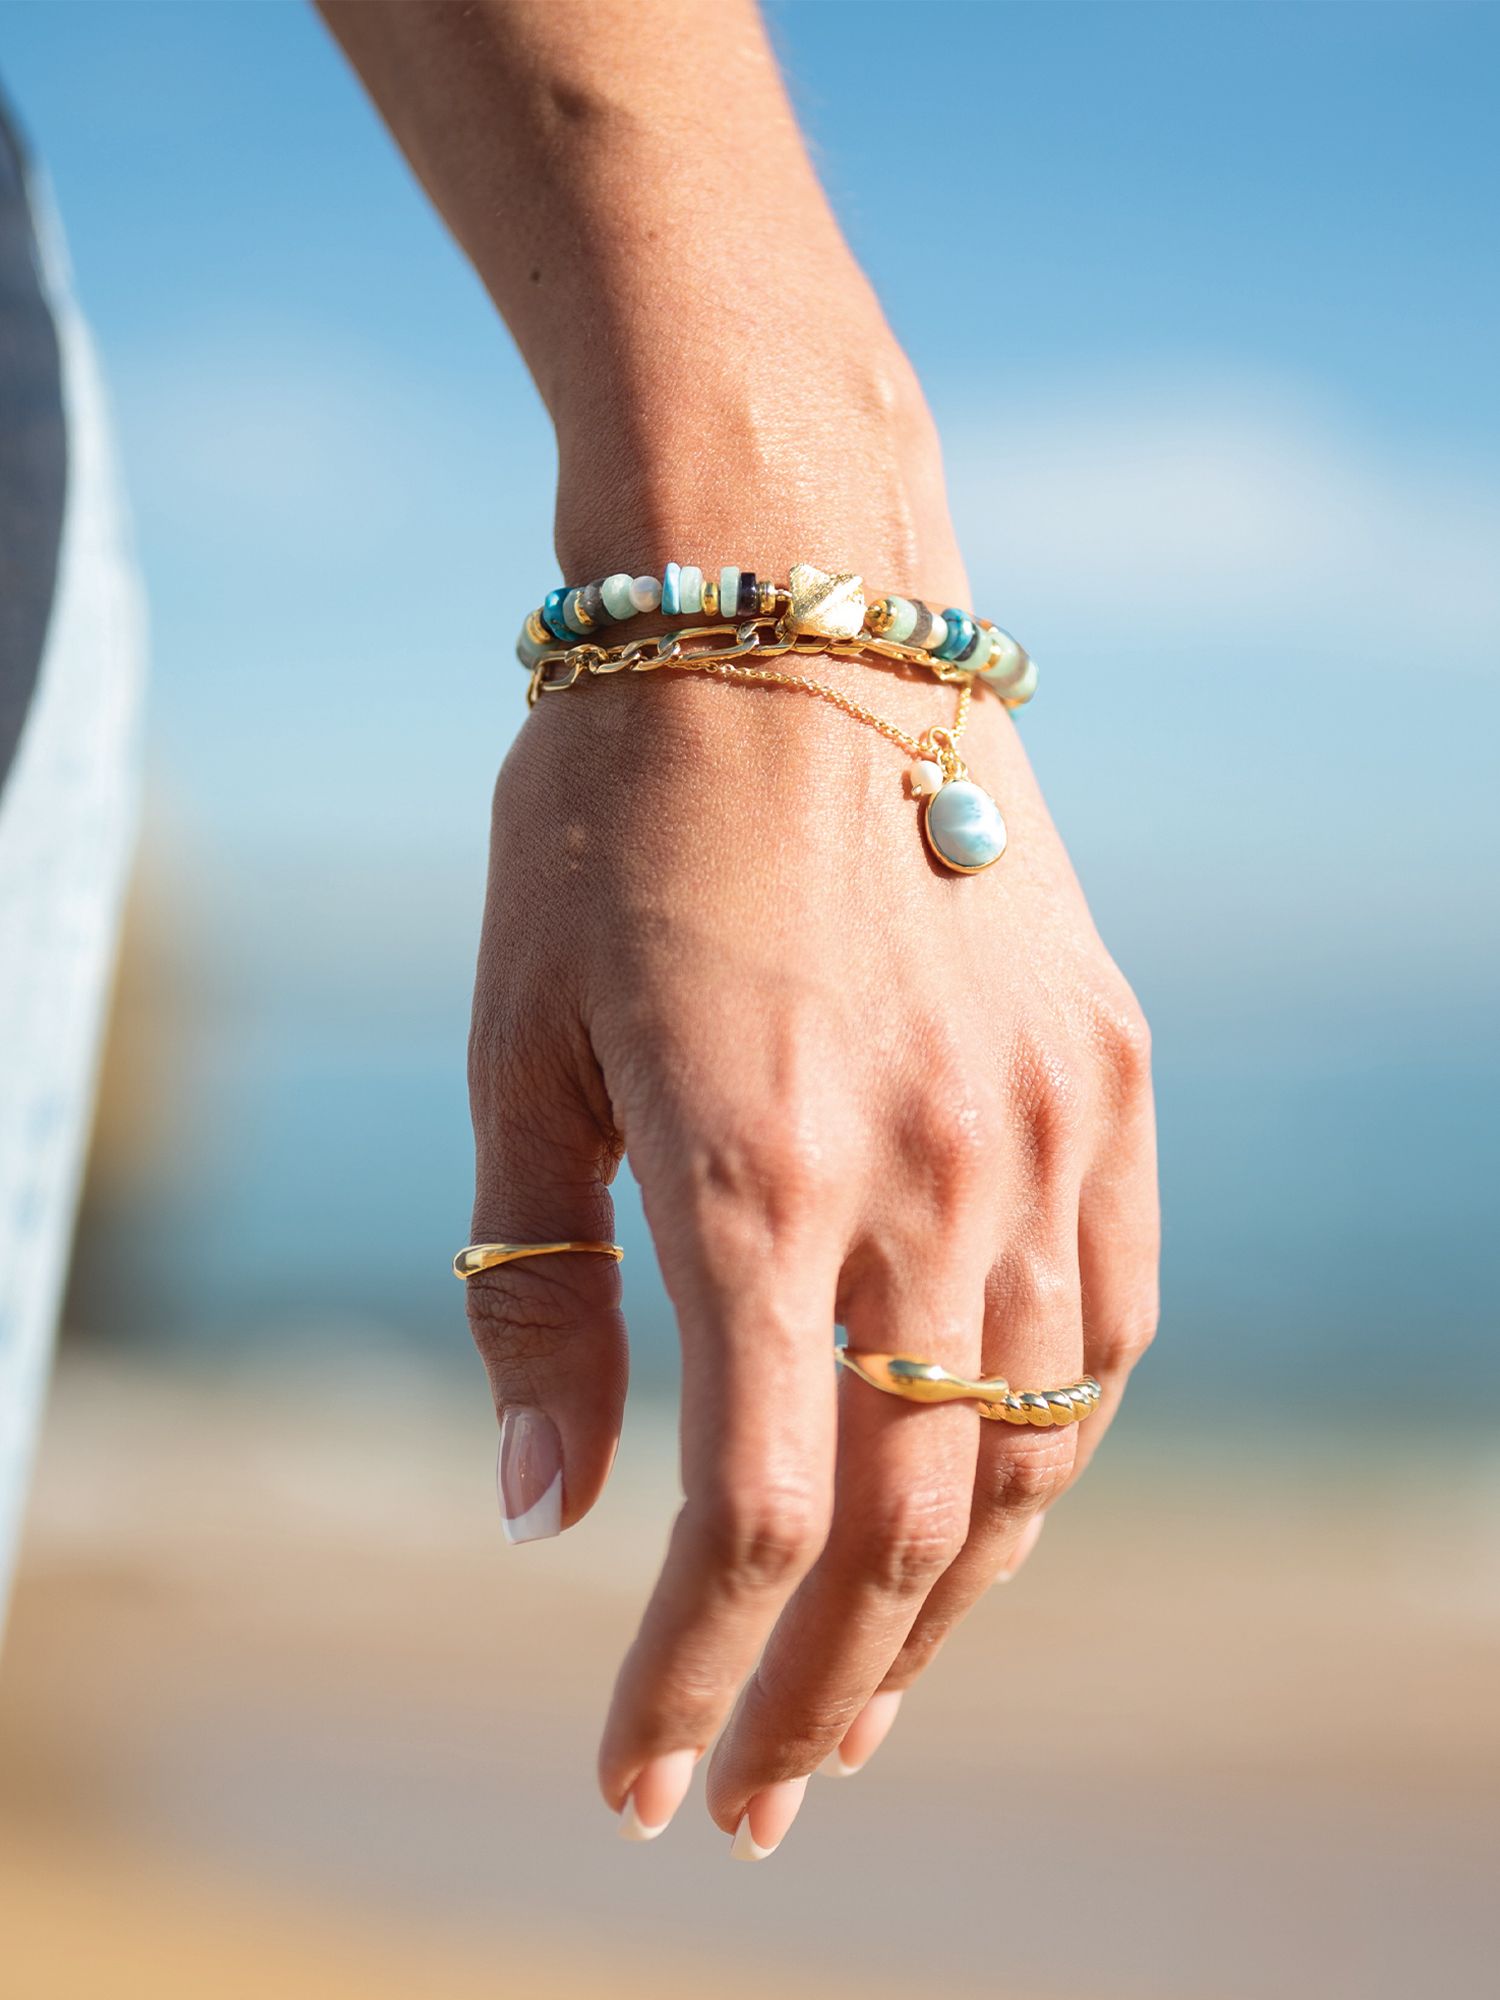 Sarah Alexander Cool Tides Gemstone and Pearl Bracelet, Gold